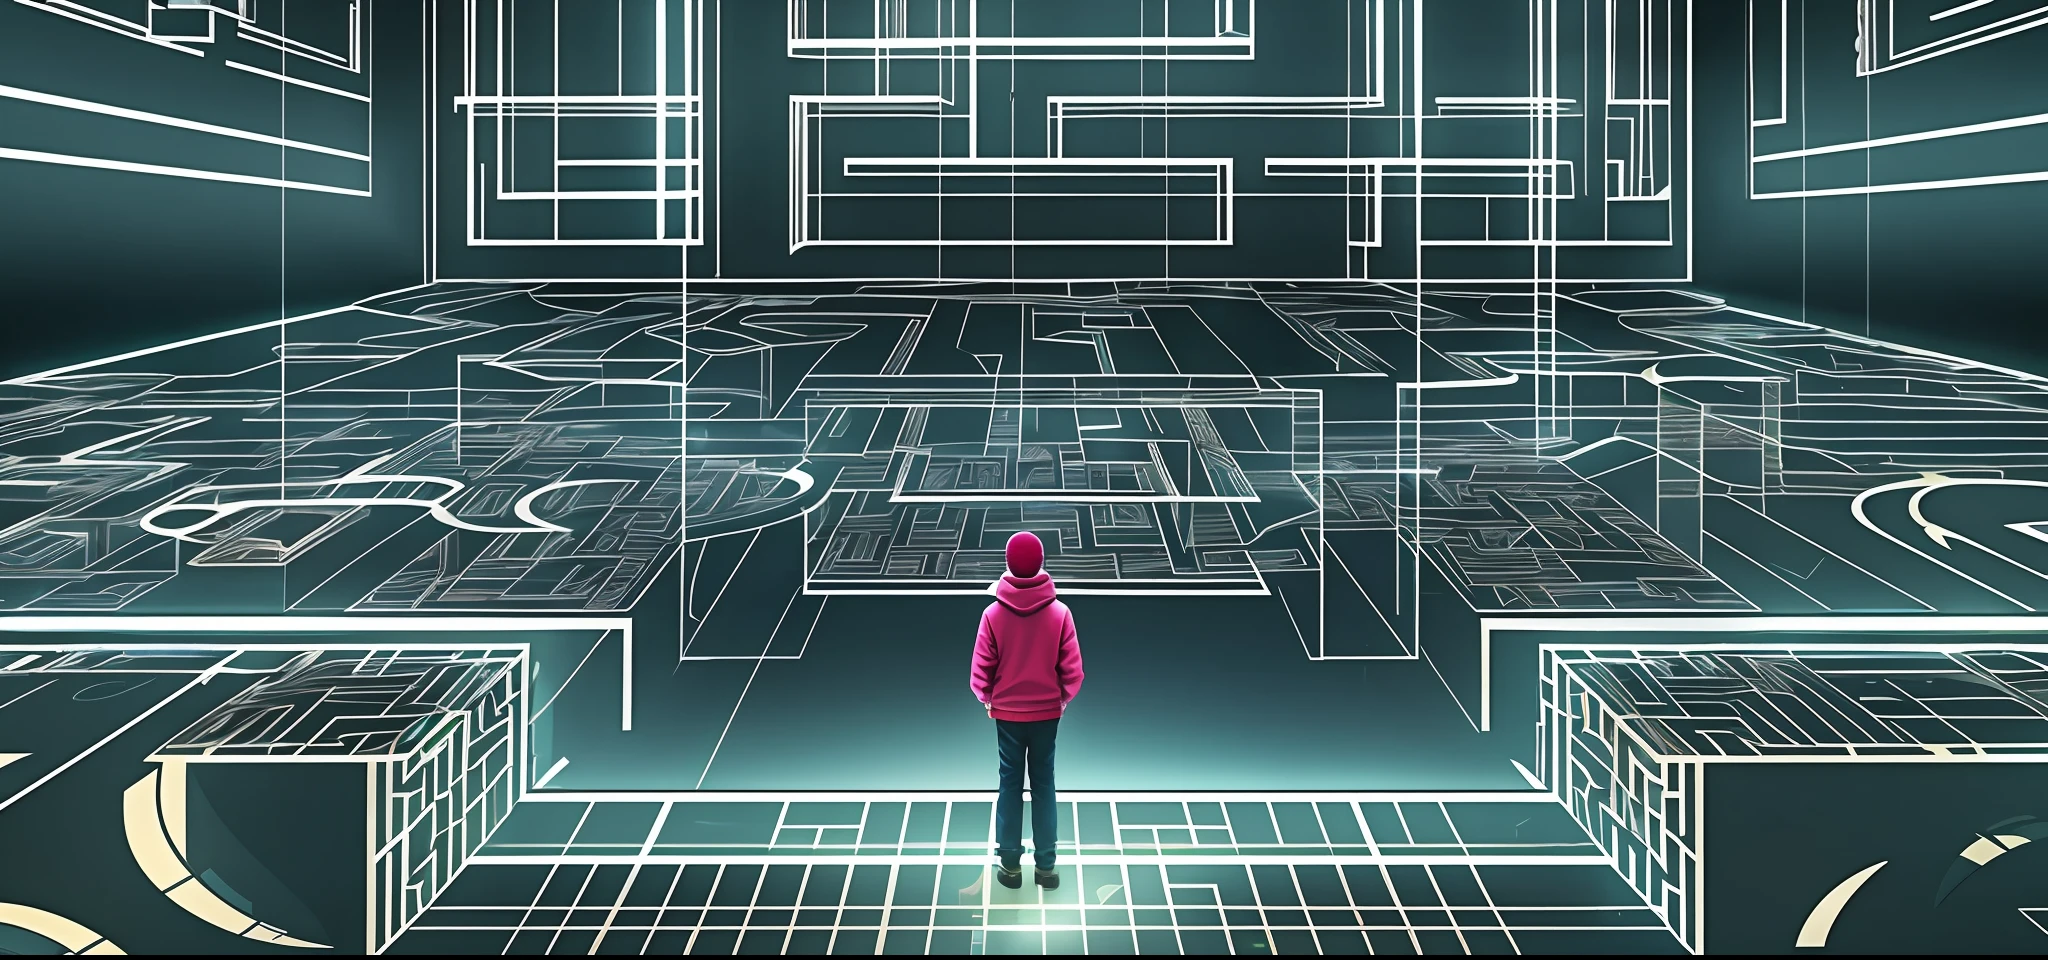 Quadratischer Innenraum, Geheimraum, immersives Indoor-Horror-Thema, Fluchtraum, Holographie, Projektion, LED, Labyrinth, digitaler immersiver Innenraum, Figuren, Entschlüsselung, Erkundung, Detail, Hohe Präzision, ground Projektion, Linien, Rätsel, ein Mädchen, ein Junge, the ground has a Labyrinth pattern, Die Oberseite ist Spiegel, Betrachtung, an der Wand hängt ein holografischer Sci-Fi-Avatar, Spukhaus, Beginn, Verzerrung, räumliche Transformation, specular Betrachtung, komplexes Muster, there is an operating table in the middle of the house with holographic Figuren on it, Es gibt VR-Brillen, Oben im Raum befindet sich ein Spiegel, der den gesamten Raum reflektiert